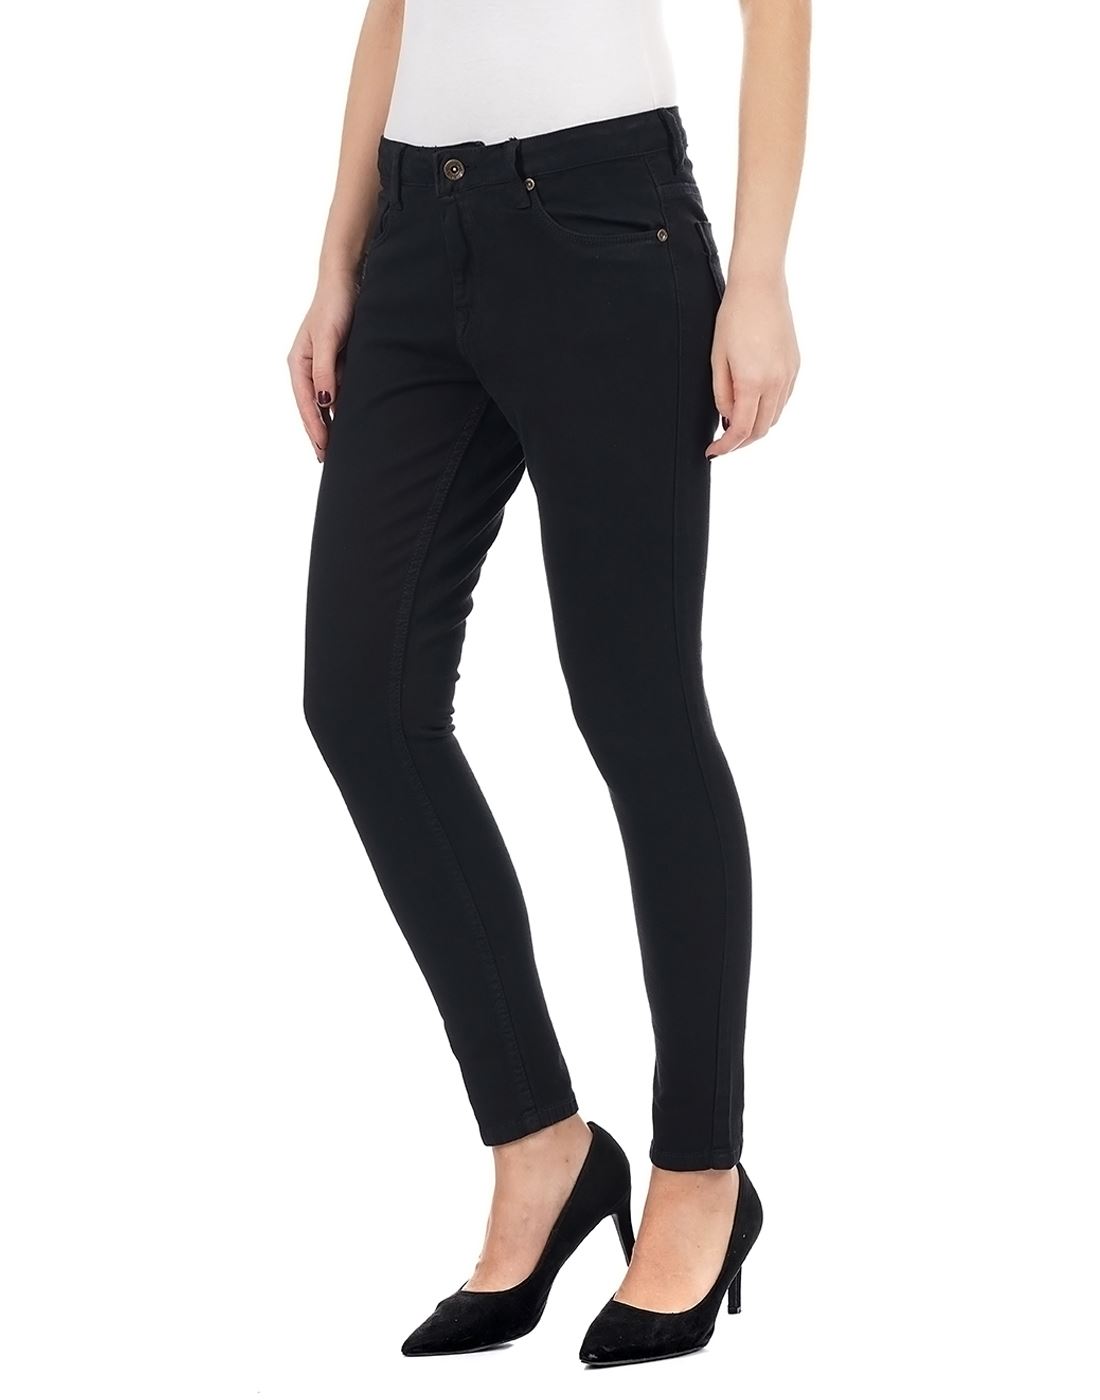 Carrera Women Casual Wear Black Jeans